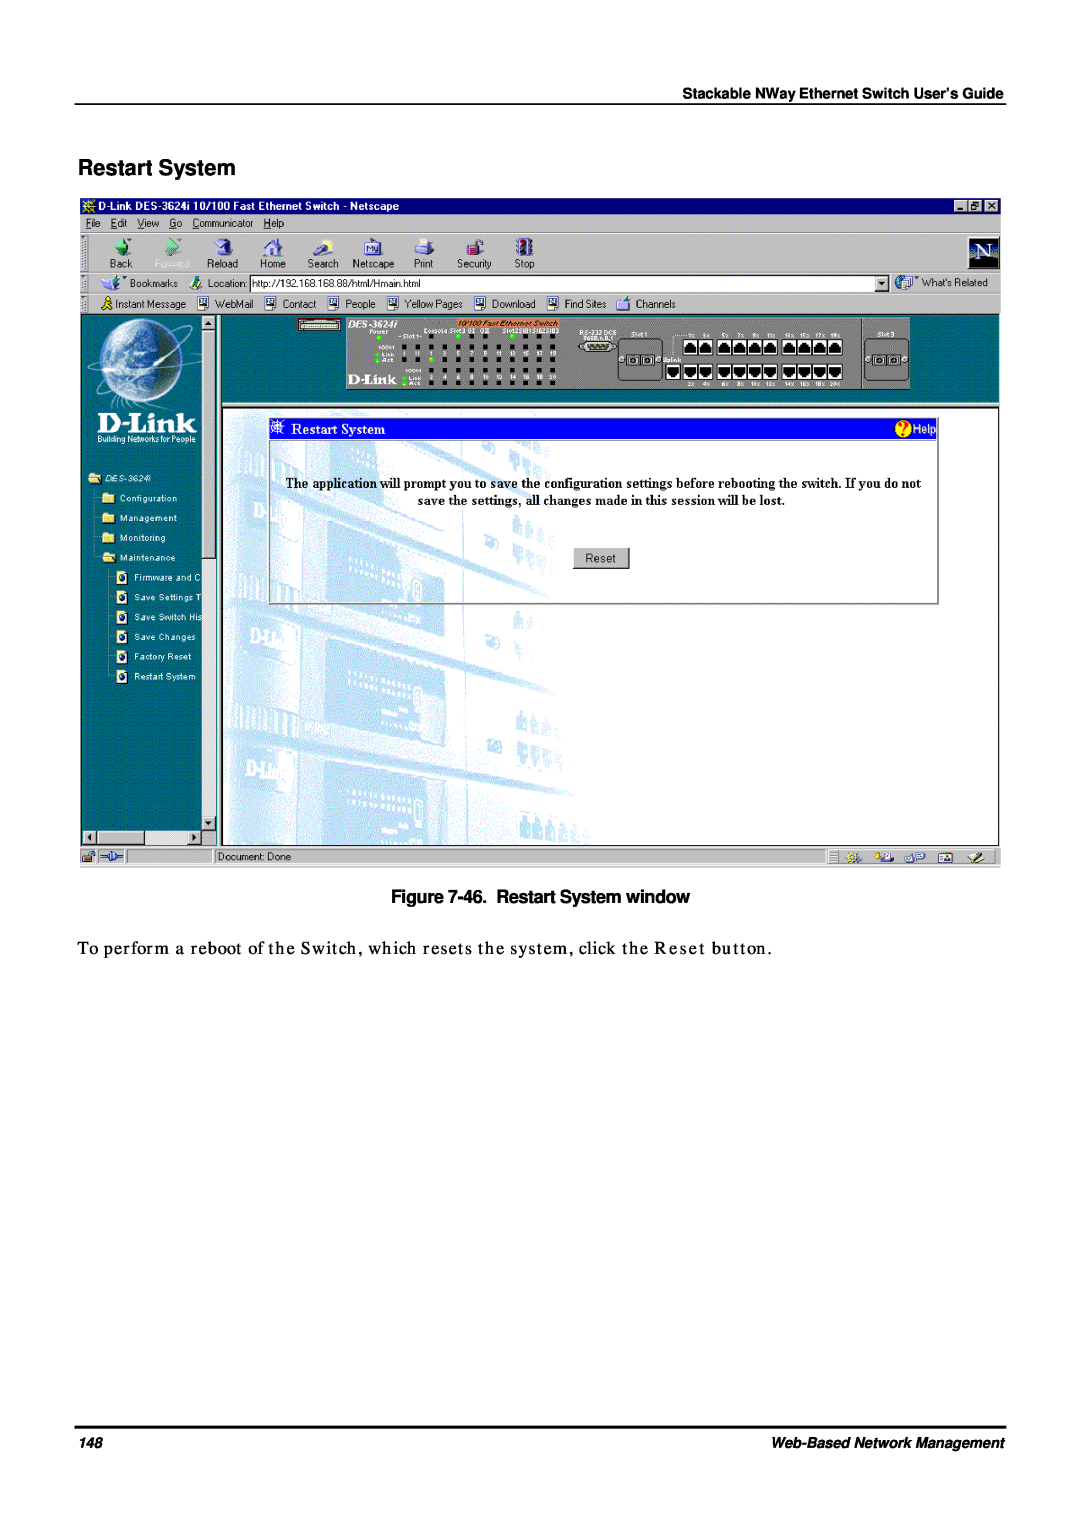 D-Link DES-3624 46. Restart System window, Stackable NWay Ethernet Switch User’s Guide, Web-Based Network Management 